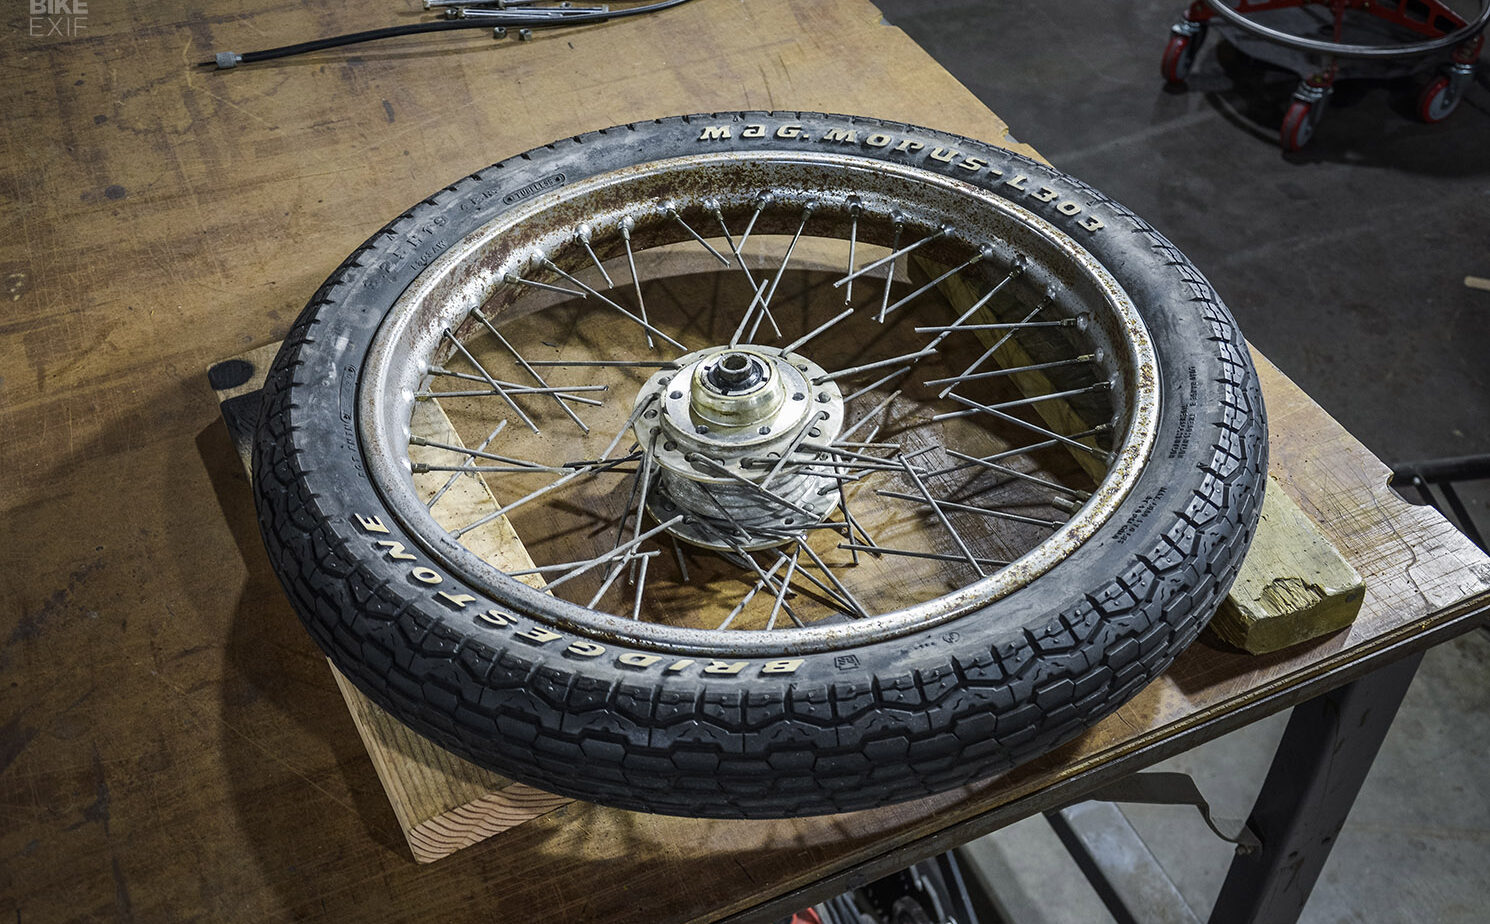 Rebuilding Motorcycle Wheels